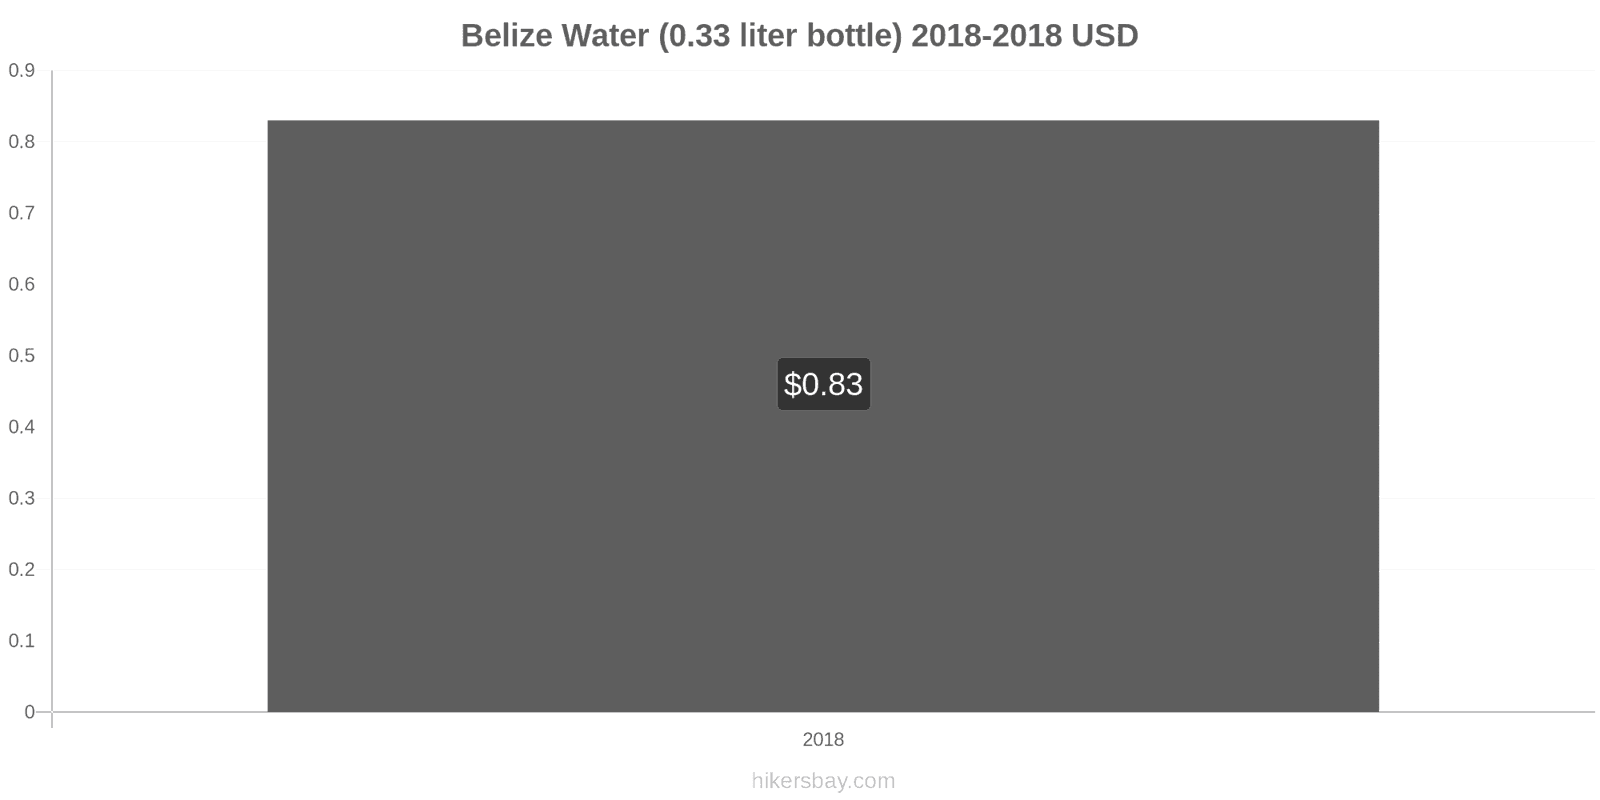 Belize price changes Water (0.33 liter bottle) hikersbay.com